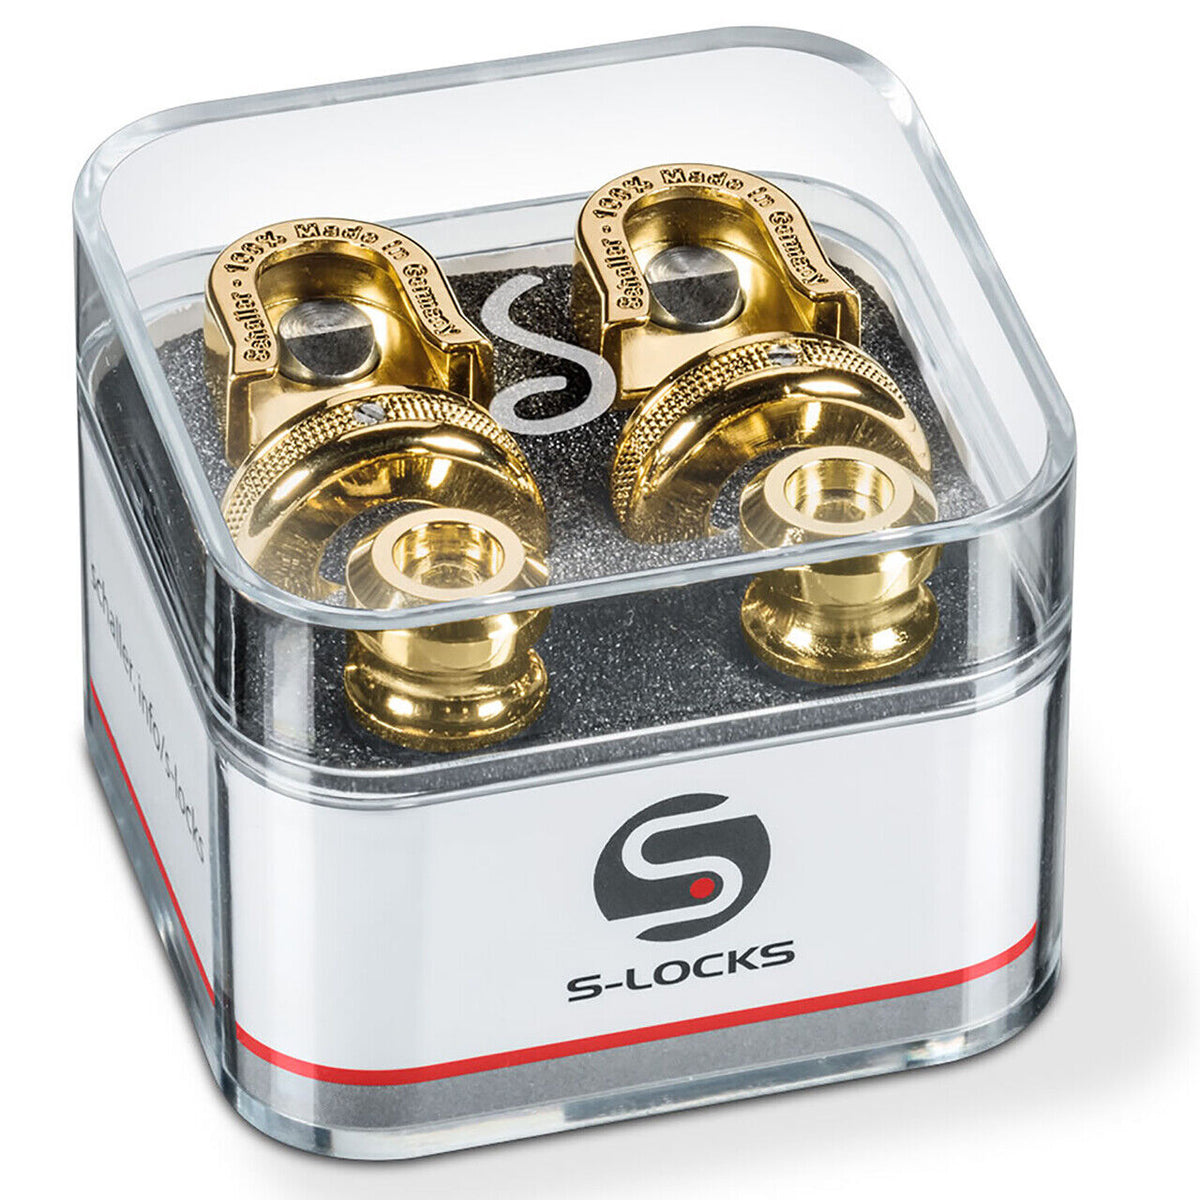 Schaller S-Locks Guitar Strap Lock System - Gold